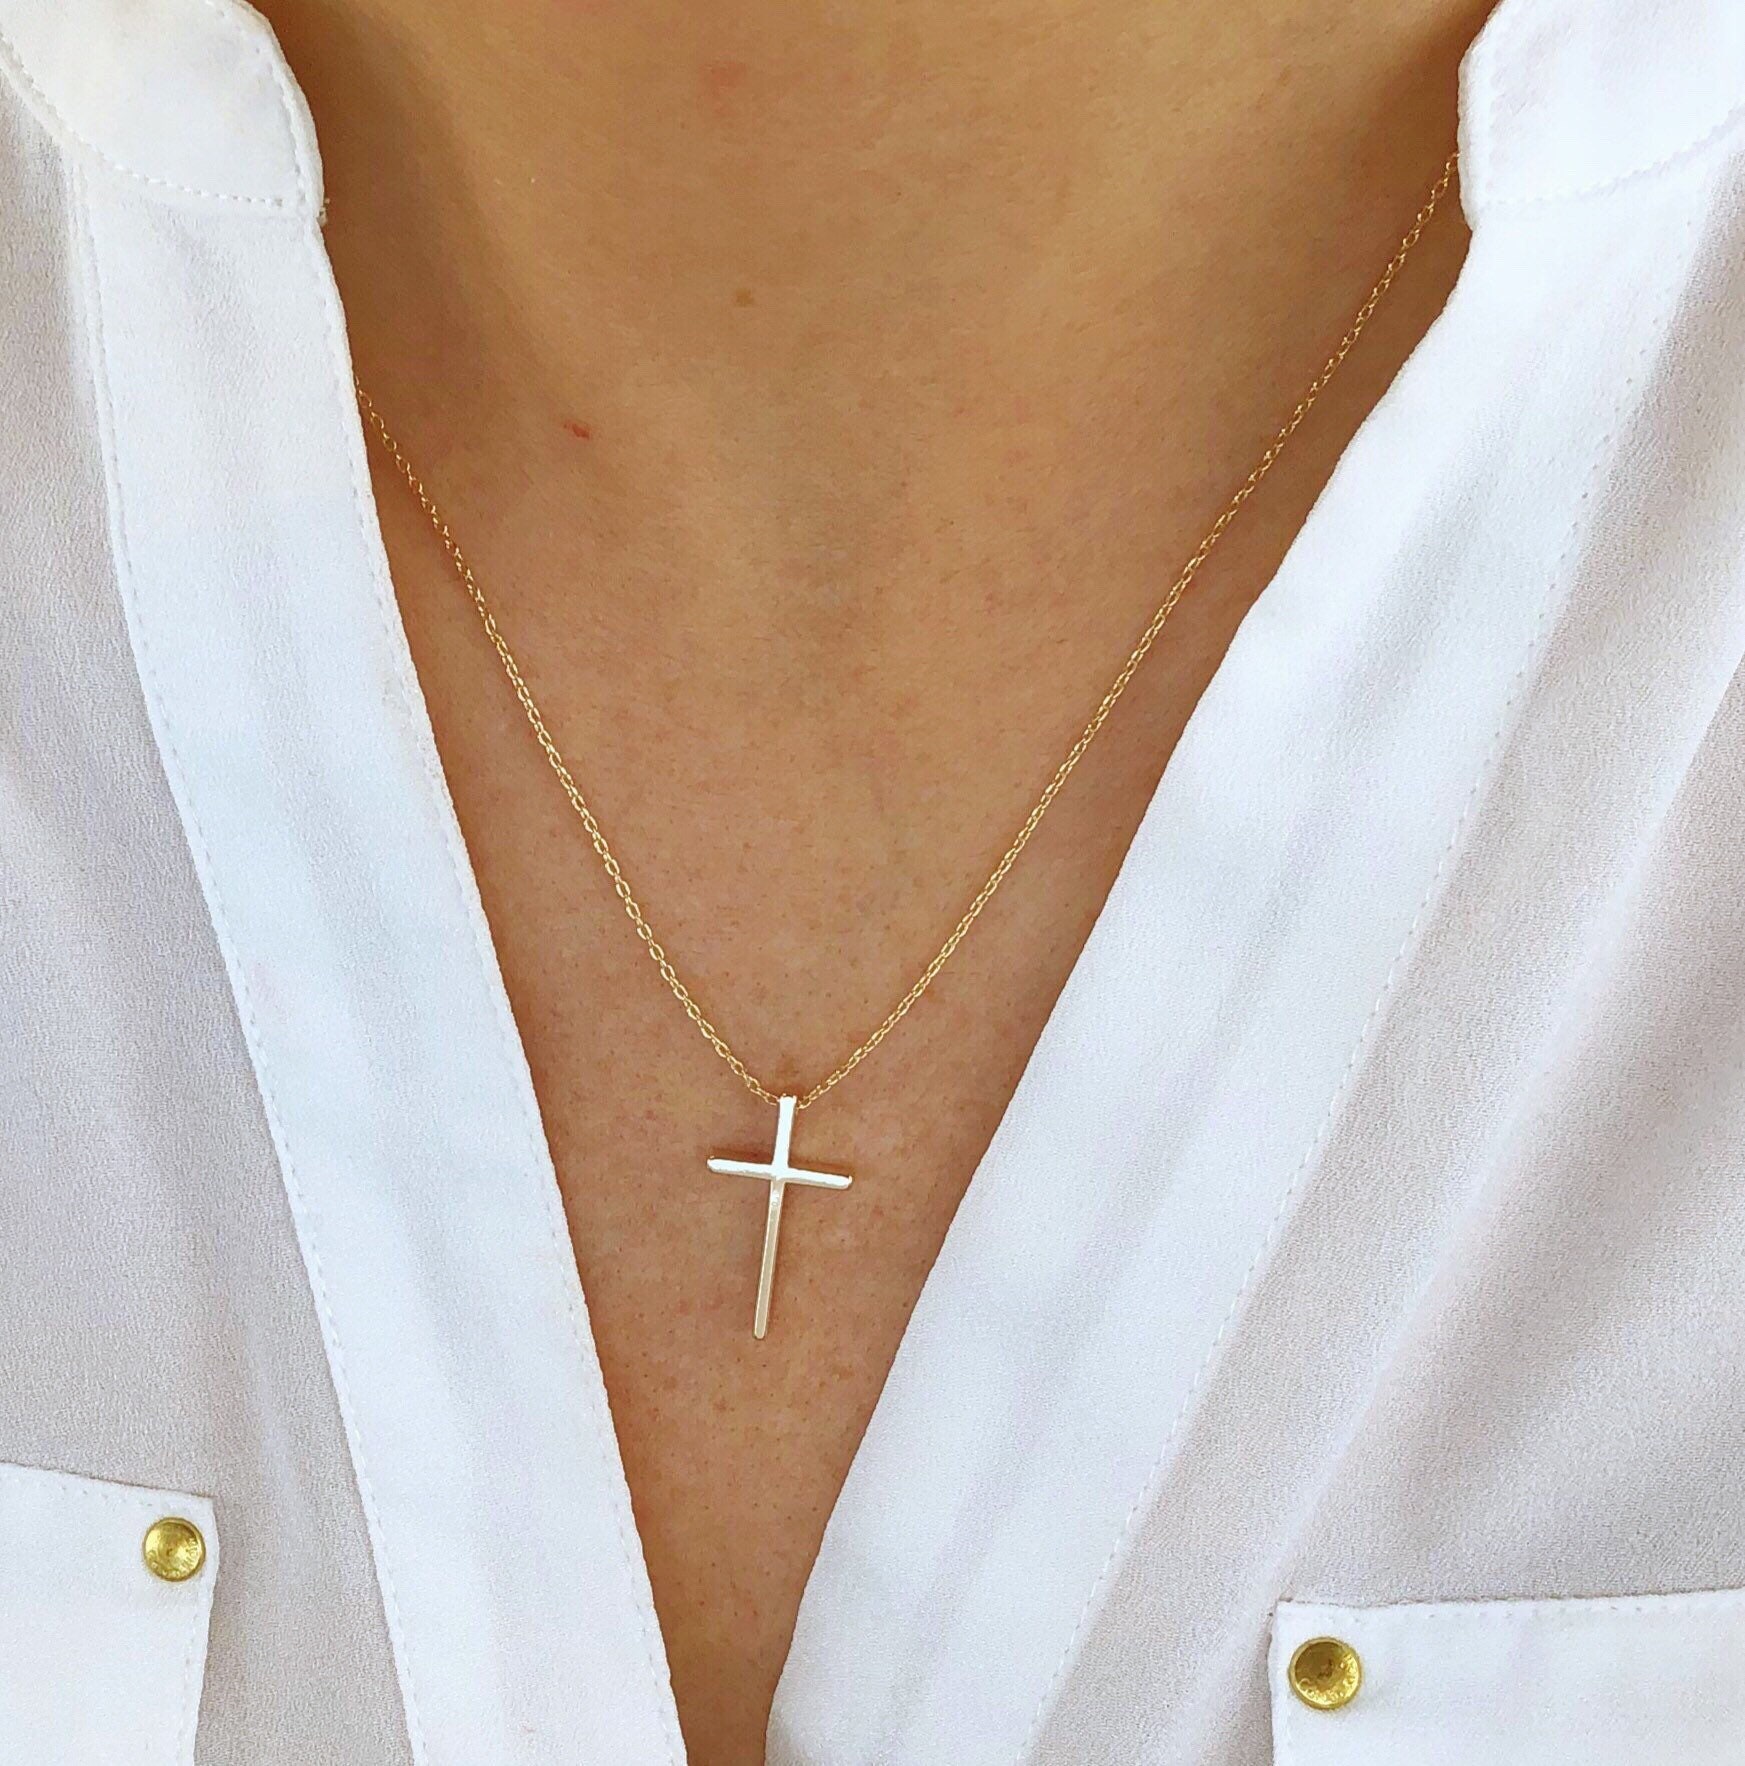 Silver cross necklace, women's cross necklace - Eleni Pantagis